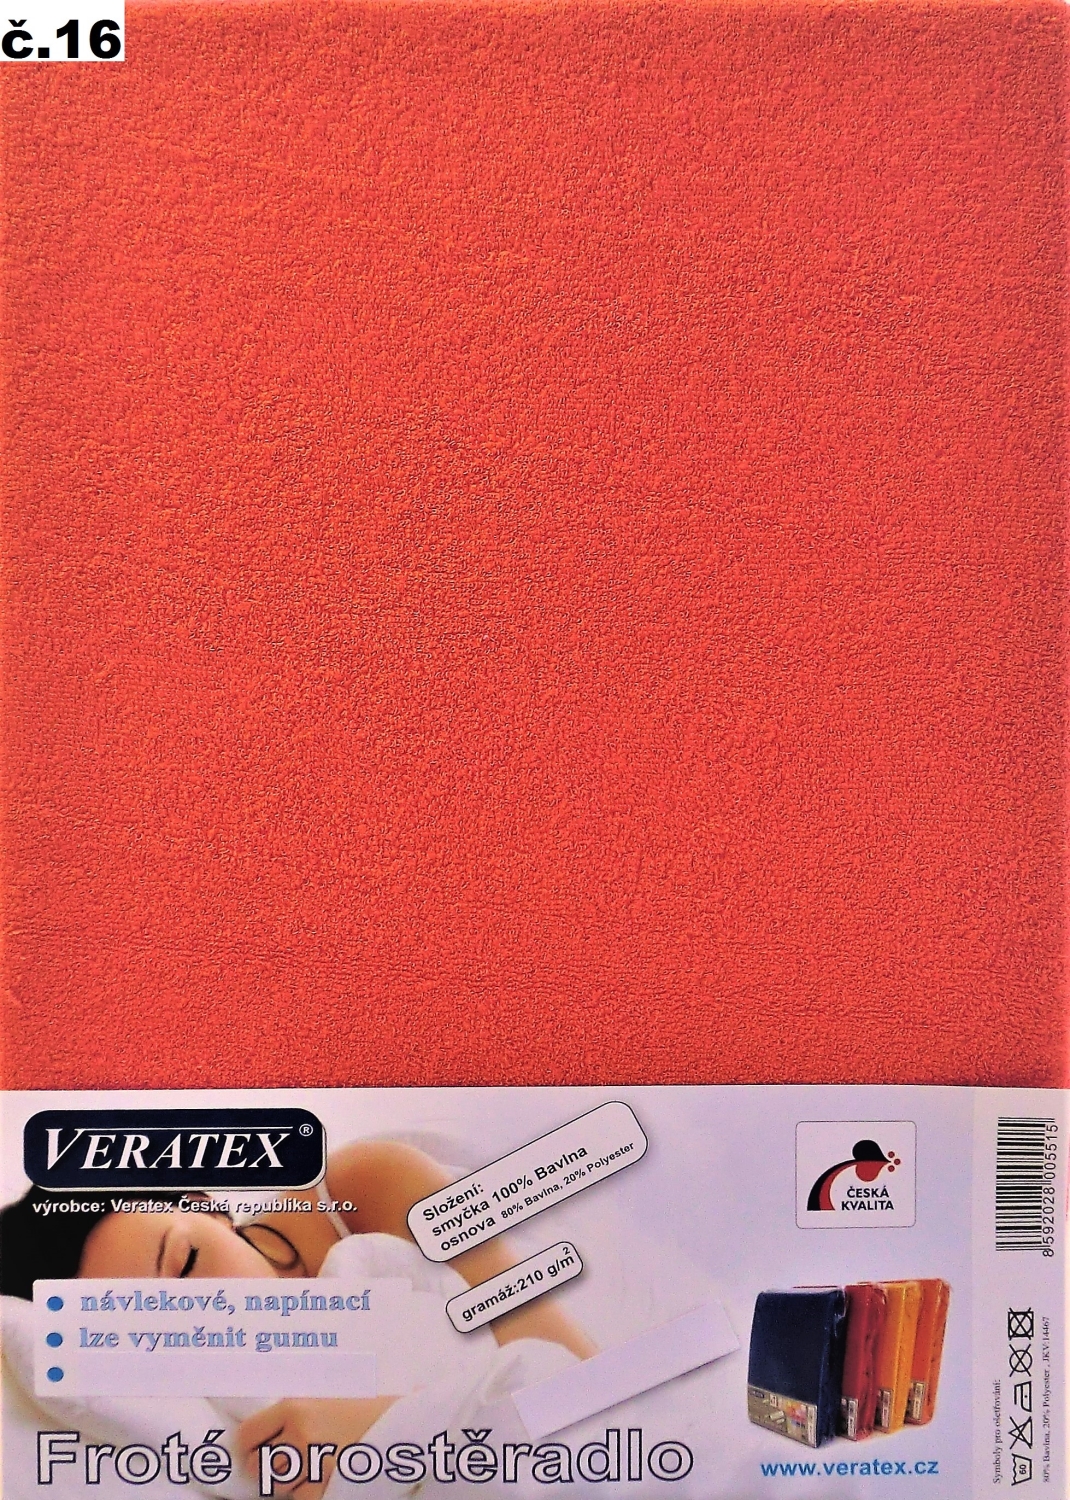 Veratex Froté prostěradlo postýlka 70x160/15 cm (č.16 malina)